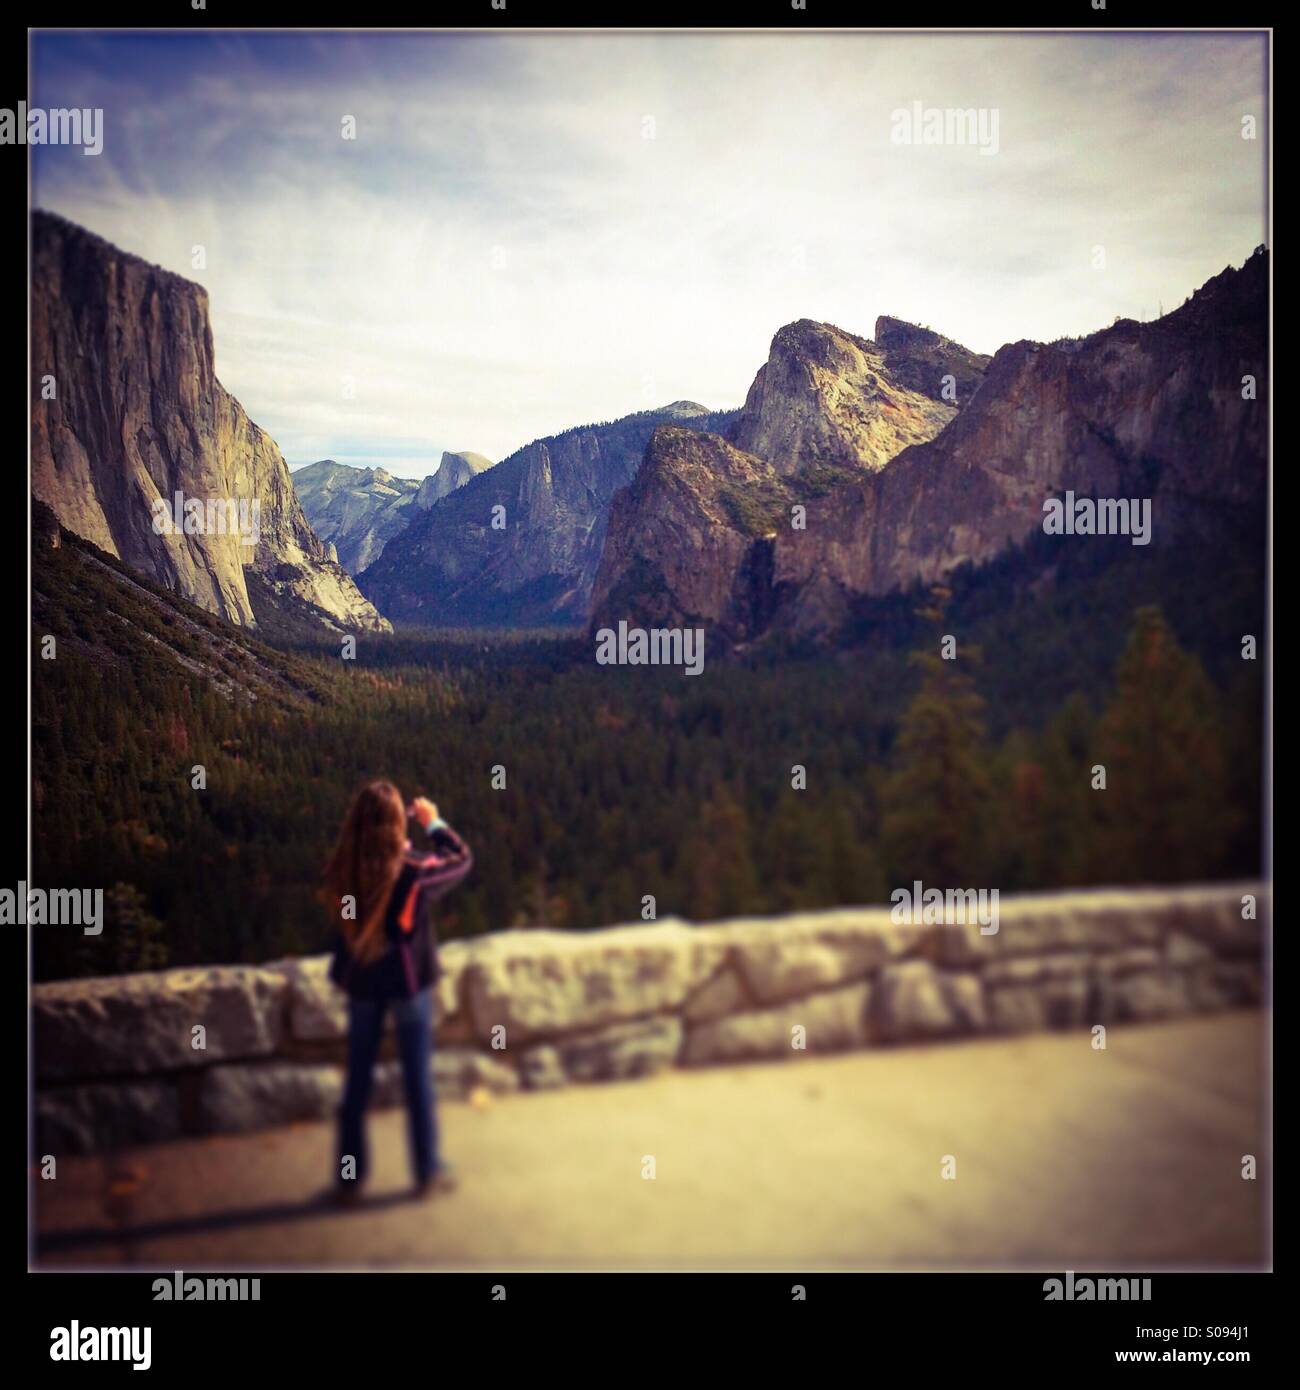 Ein 11 Jahres altes Mädchen nimmt Bilder des Yosemite Valley im berühmten Tunnel View Vista Wawona unterwegs. Yosemite-Nationalpark, Mariposa County, Kalifornien, USA Stockfoto